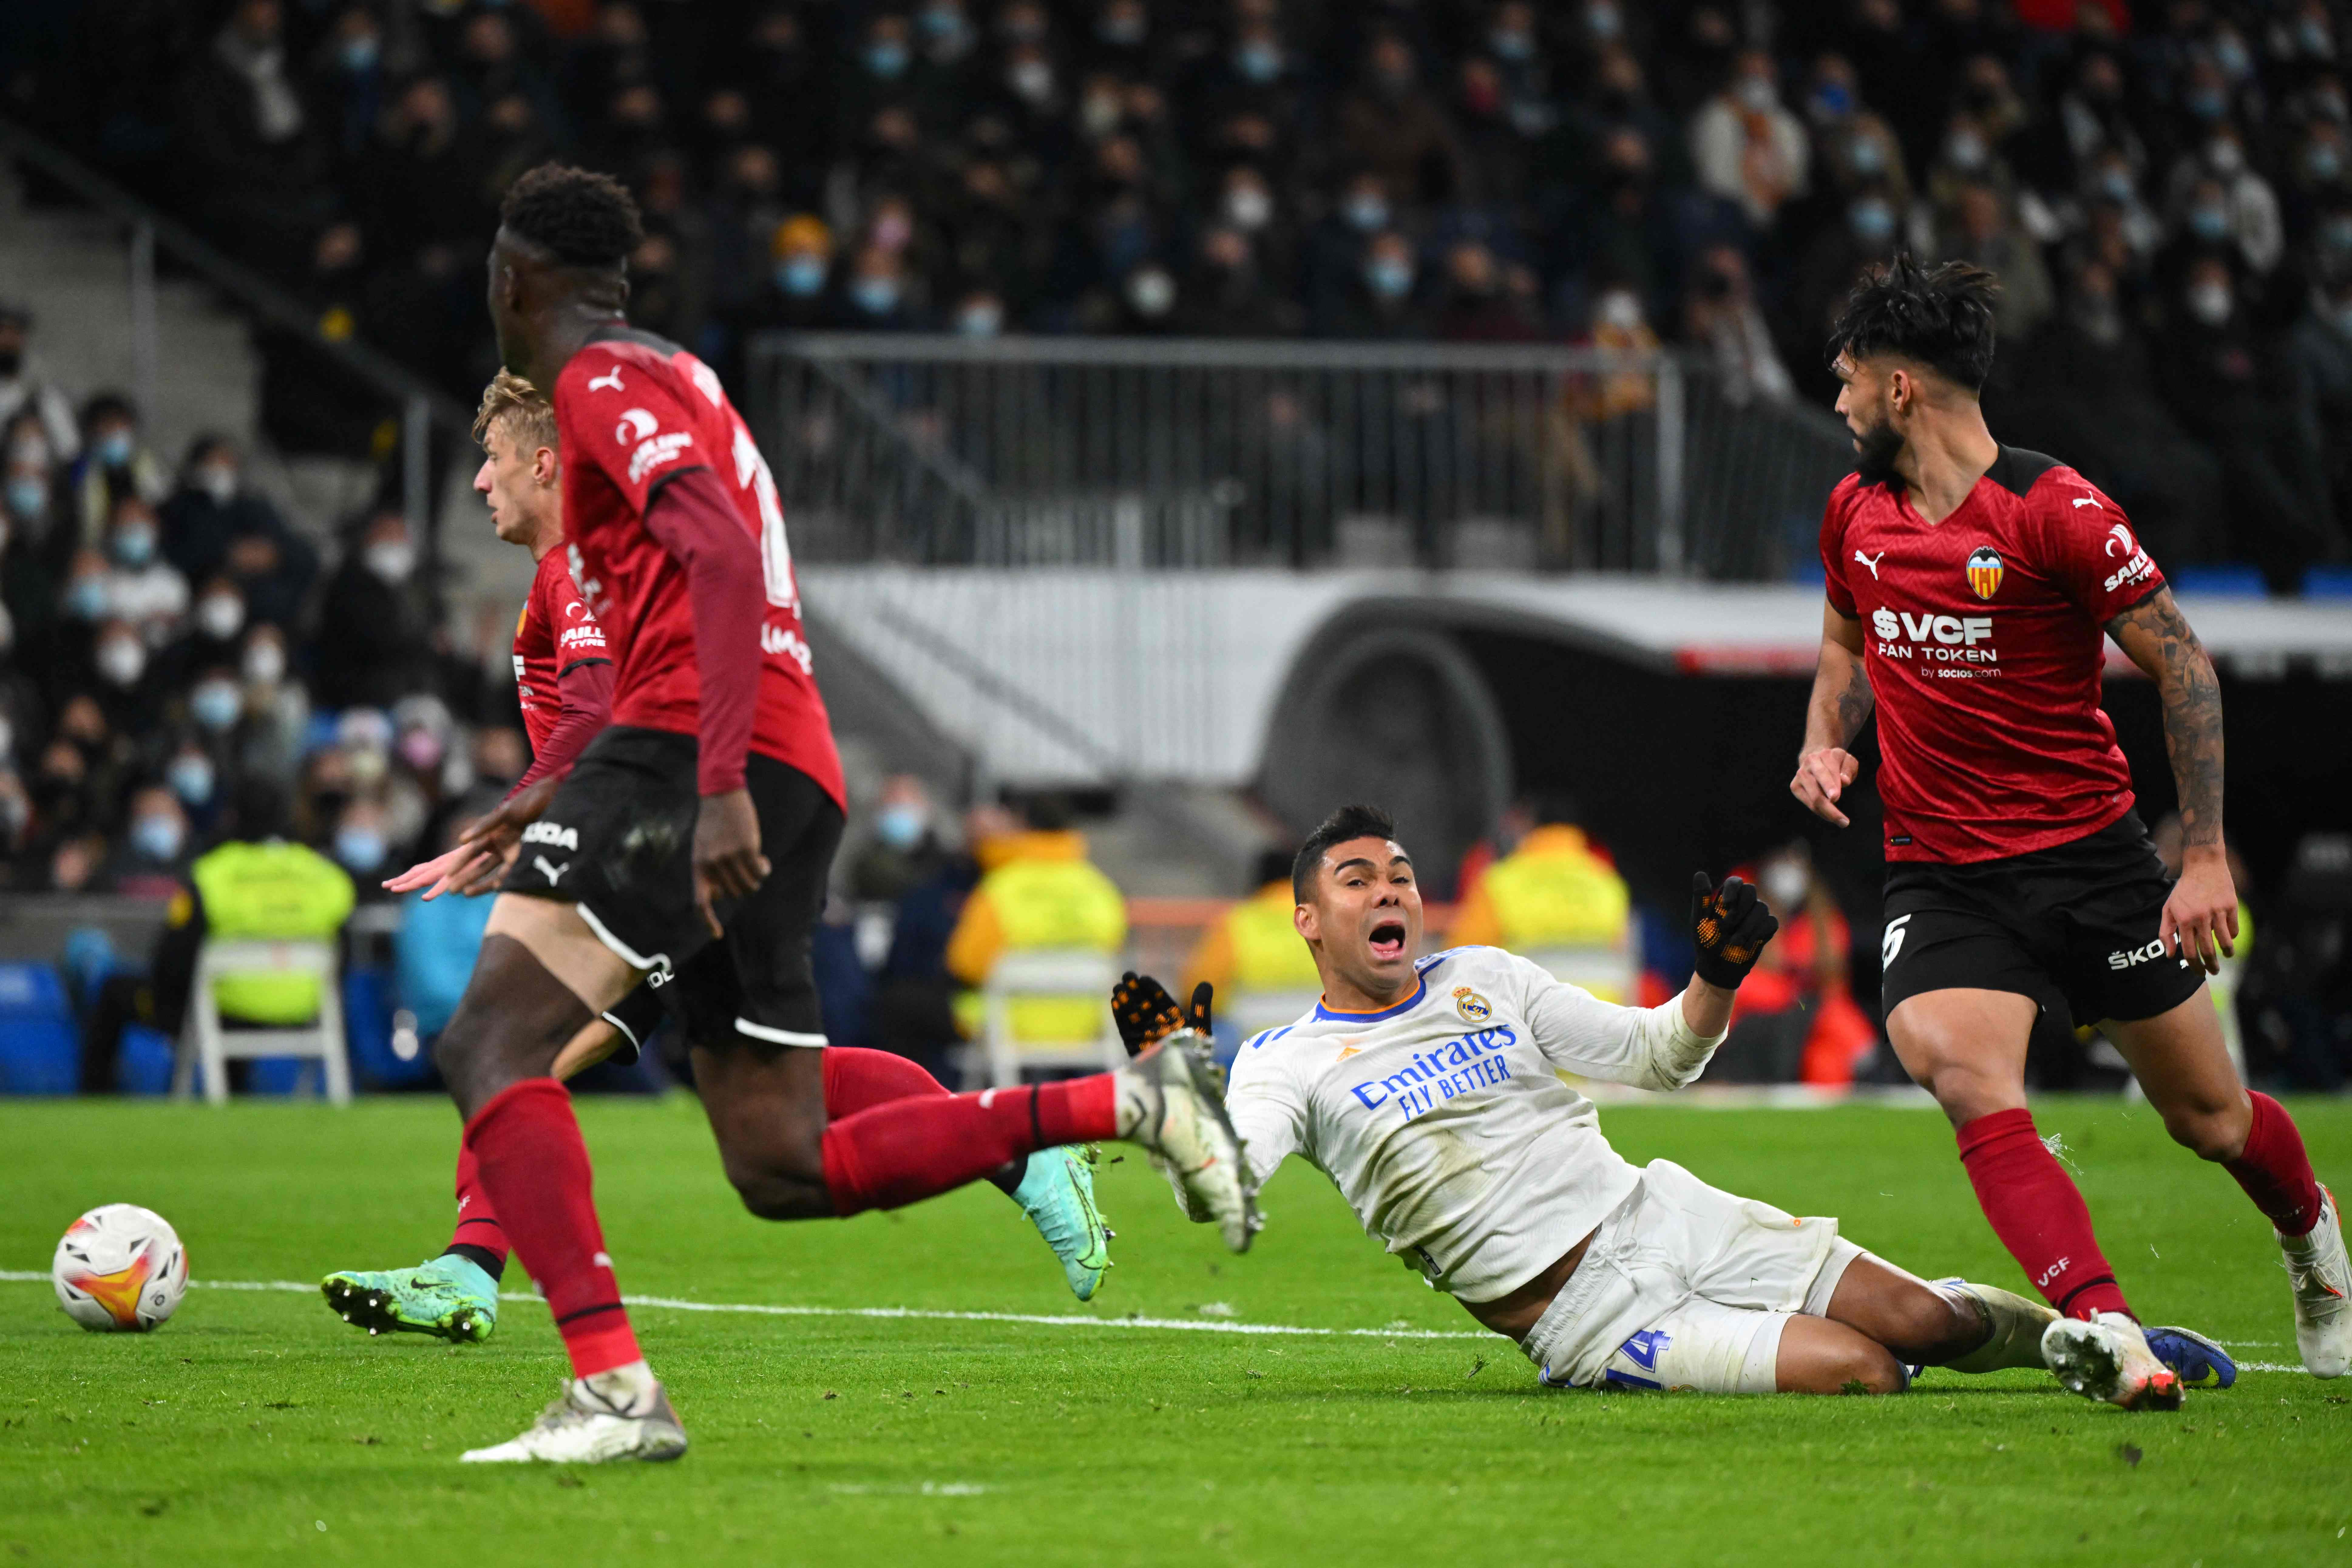 El jugador del Real Madrid Carlos Henrique Casemiro (de blanco) cae dentro del área tras una falta del francés Mouctar Diakhaby (de rojo) en el Santiago Bernabéu. (Foto Prensa Libre: AFP)